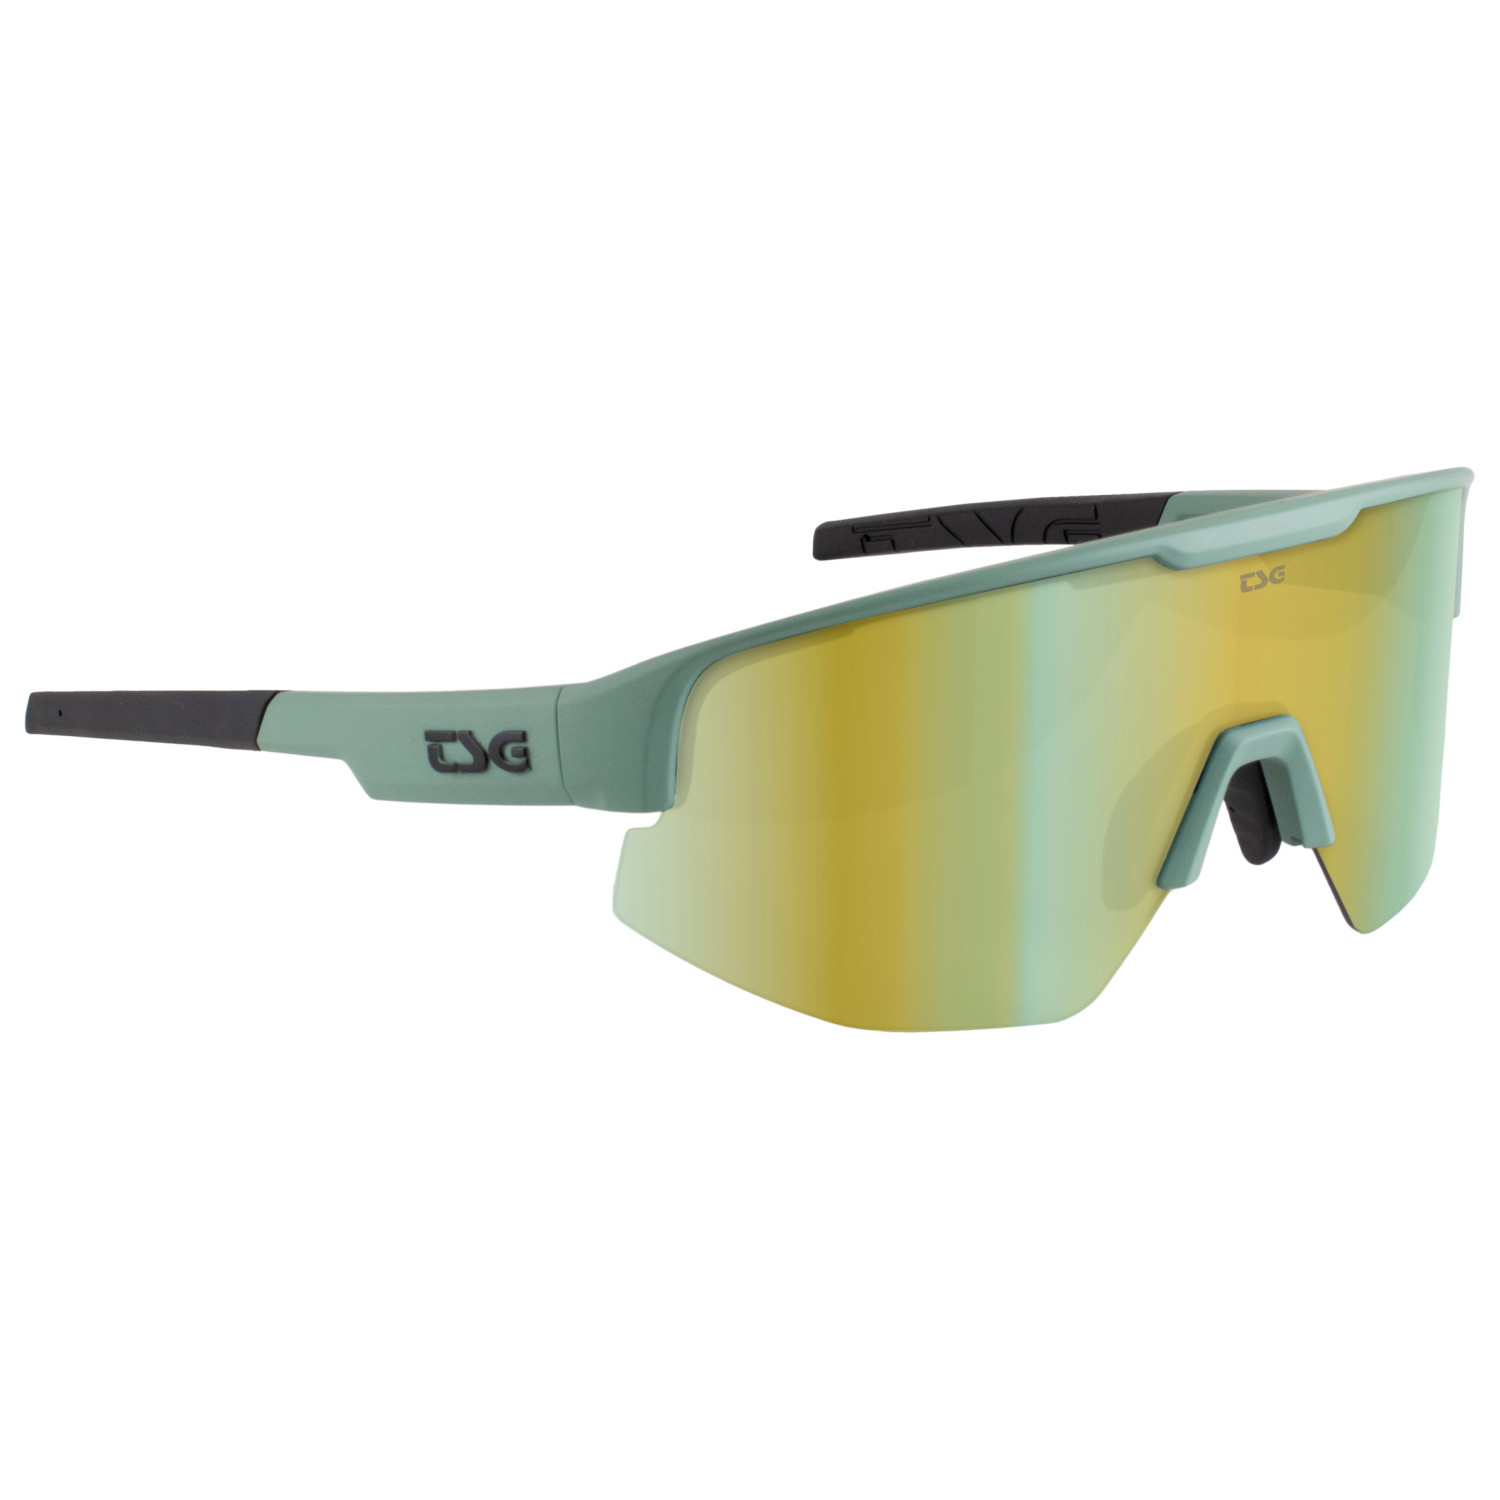 Велосипедные очки Tsg Loam Sunglasses, цвет Green/Grey